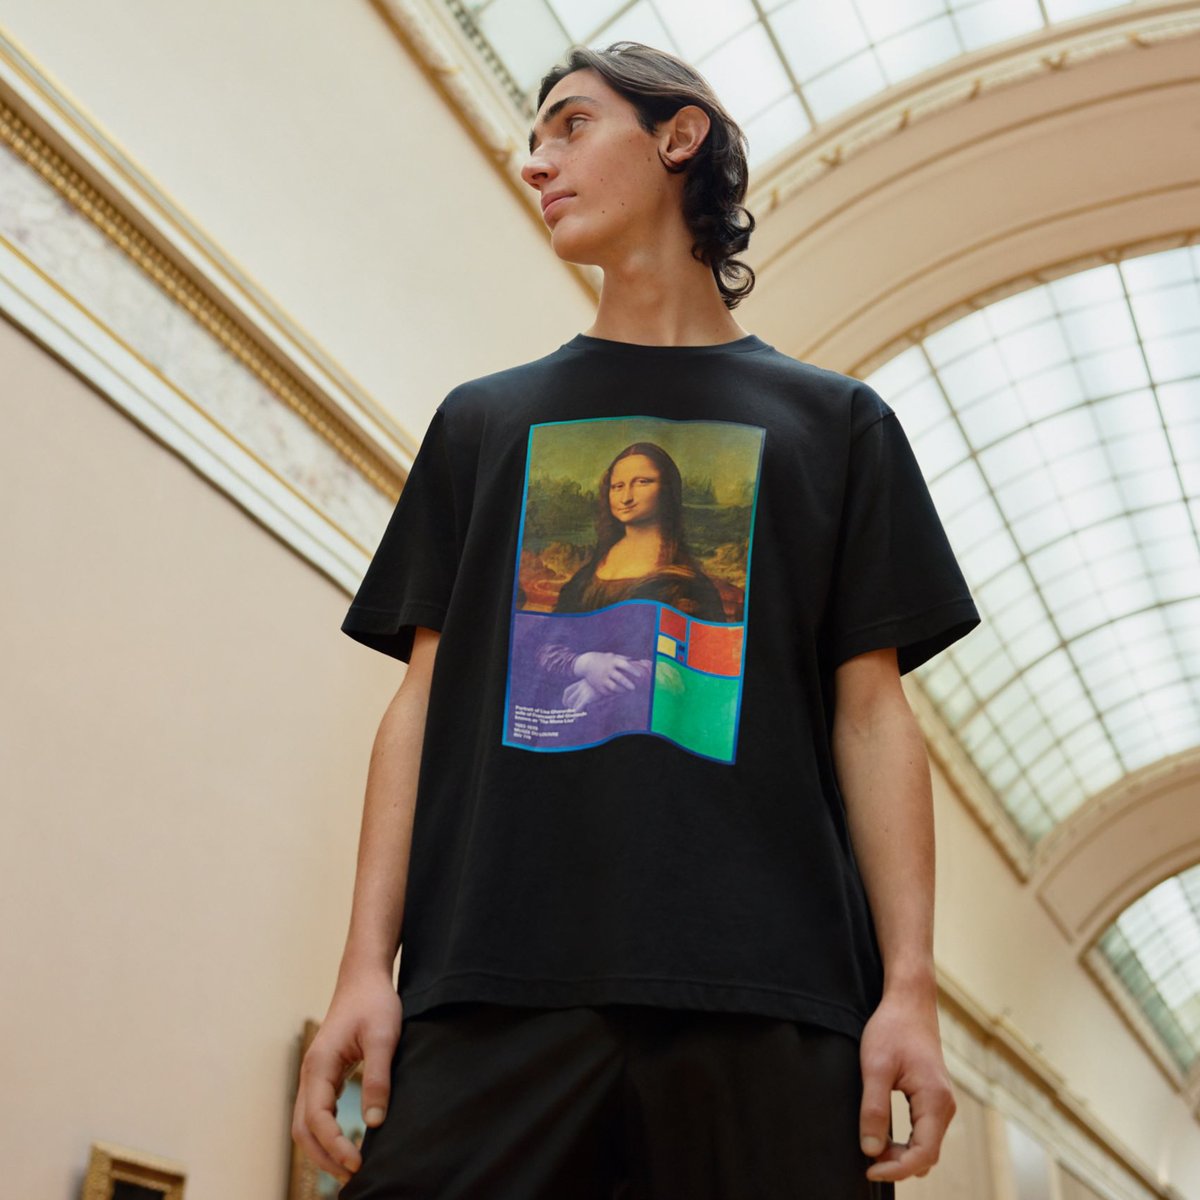 ユニクロ「UT」がルーヴル美術館とコラボ、モナ・リザなど名画がTシャツに